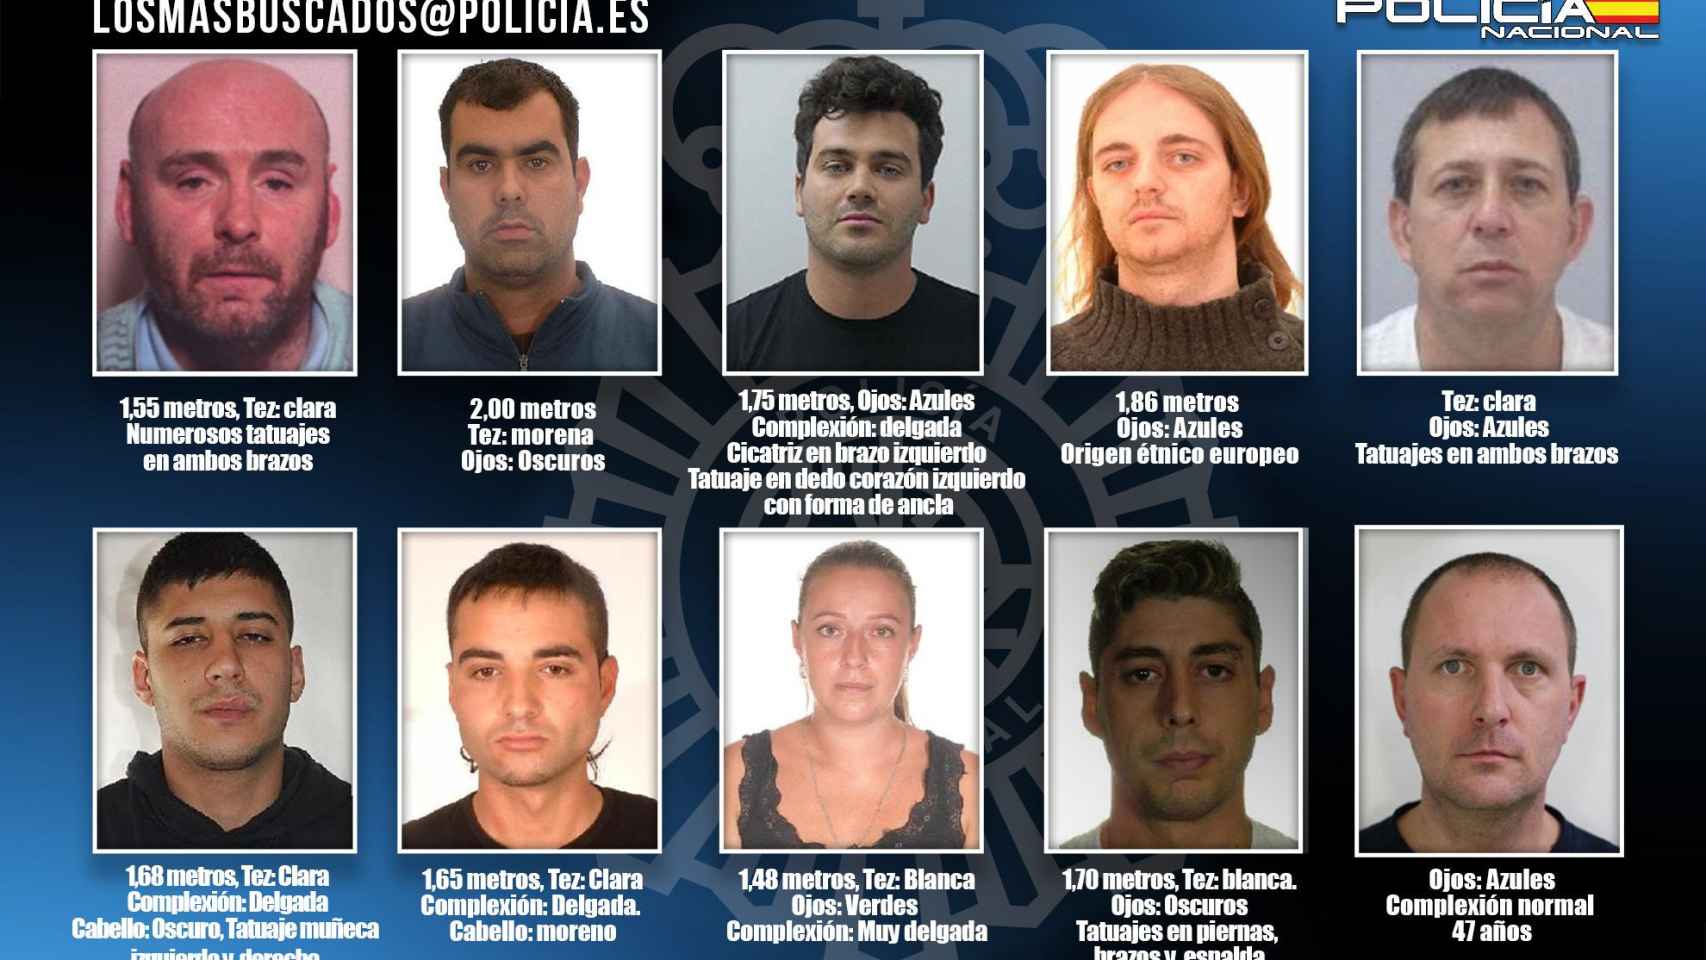 Los 10 fugitivos más buscados por la Policía / POLICÍA NACIONAL